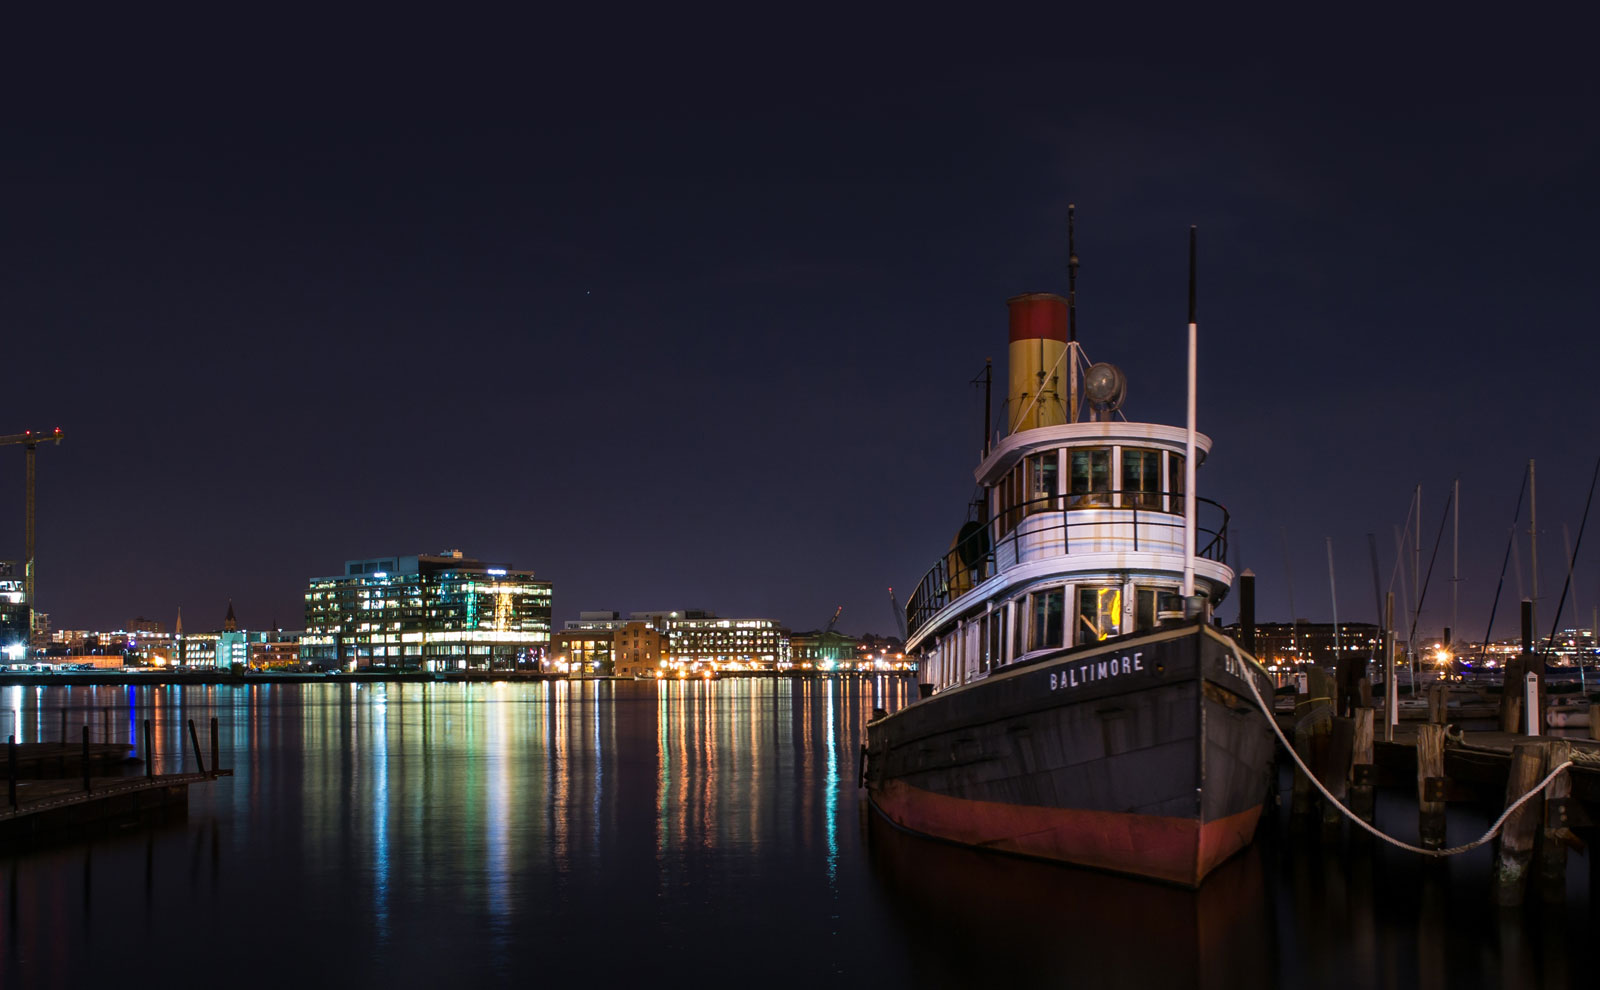 Boat in Baltimore Harbor